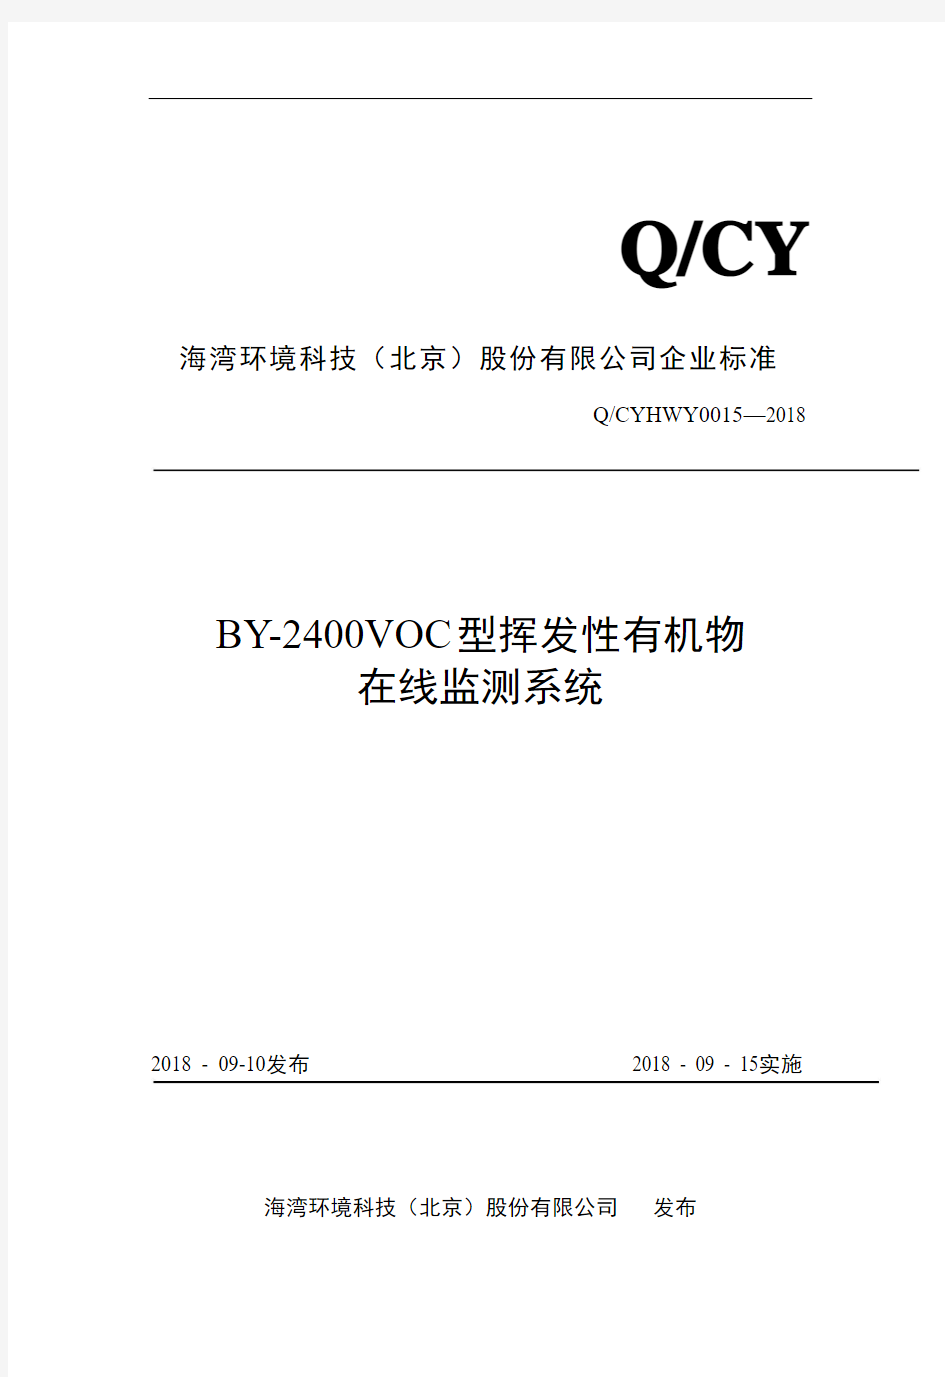 Q_CYHWY0015-2018BY-2400VOC型挥发性有机物在线监测系统